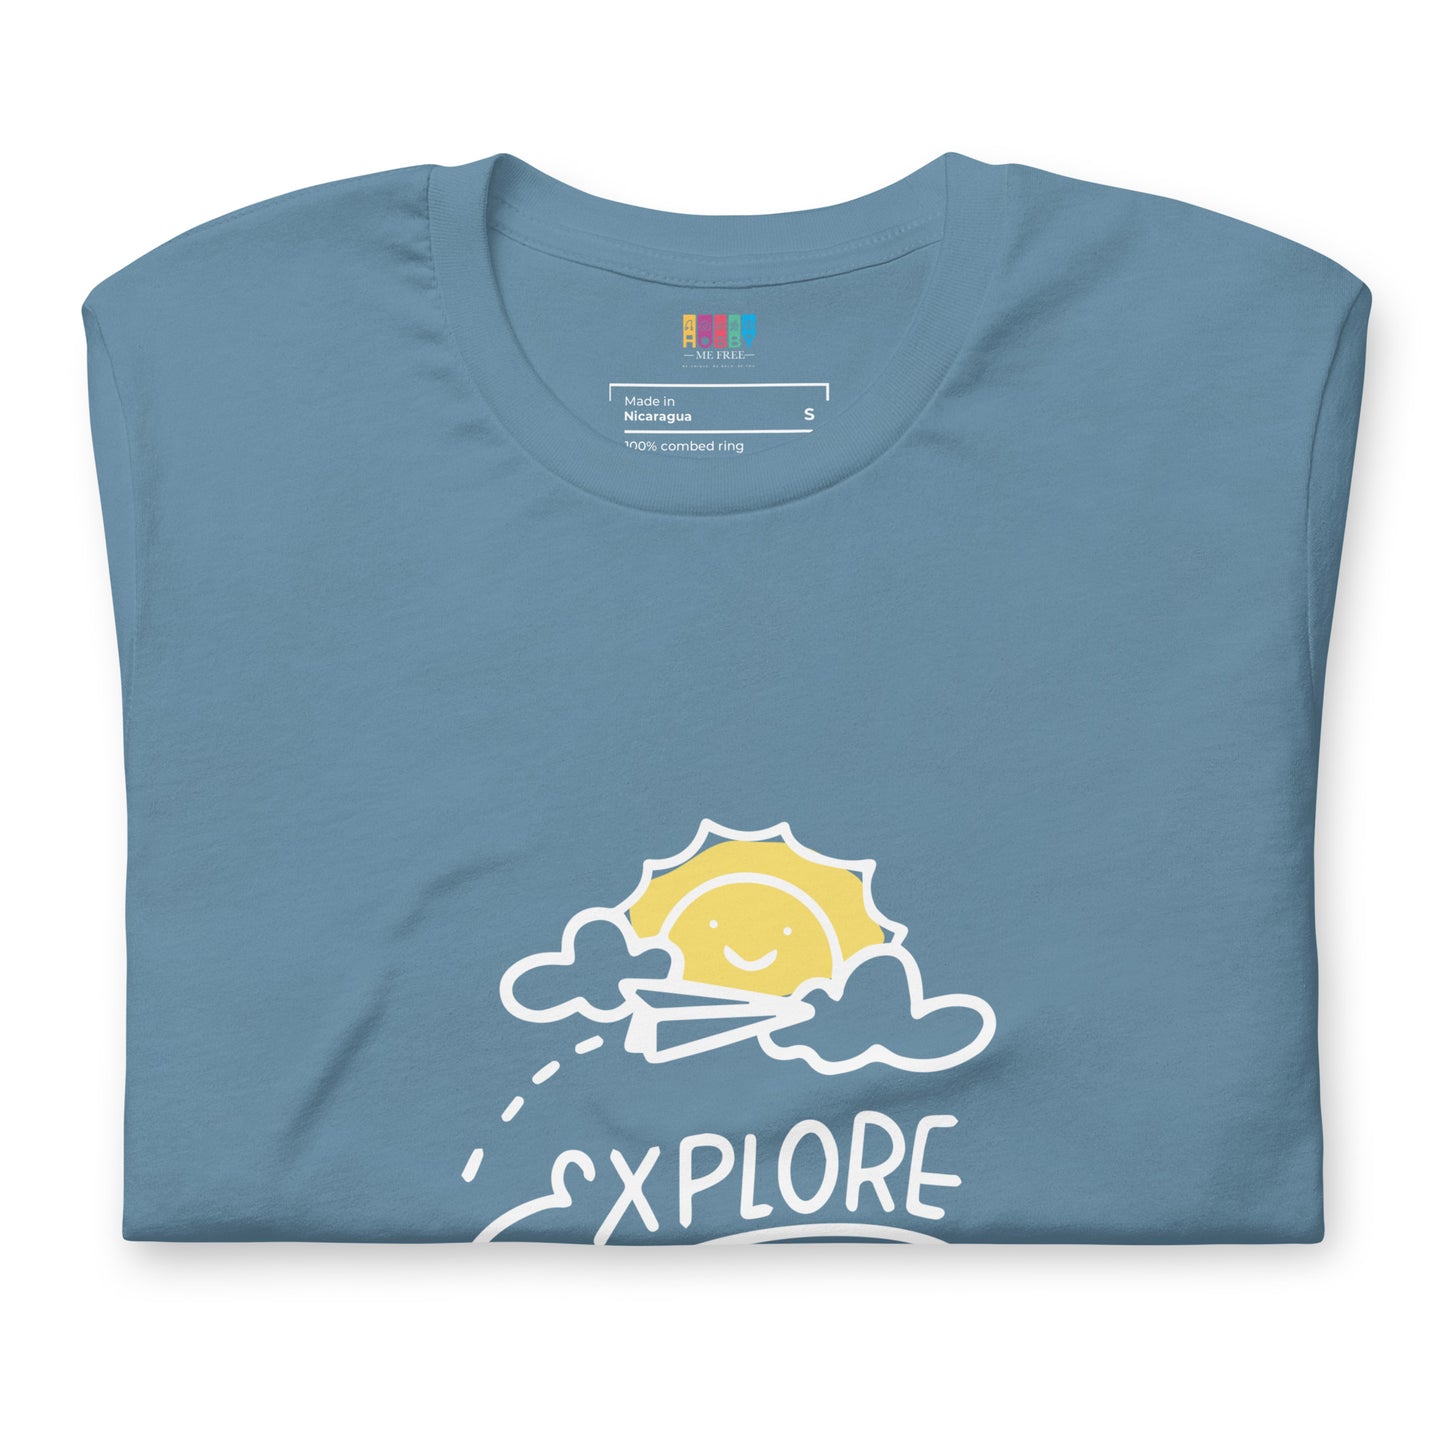 Explore more - Unisex t-shirt - HobbyMeFree